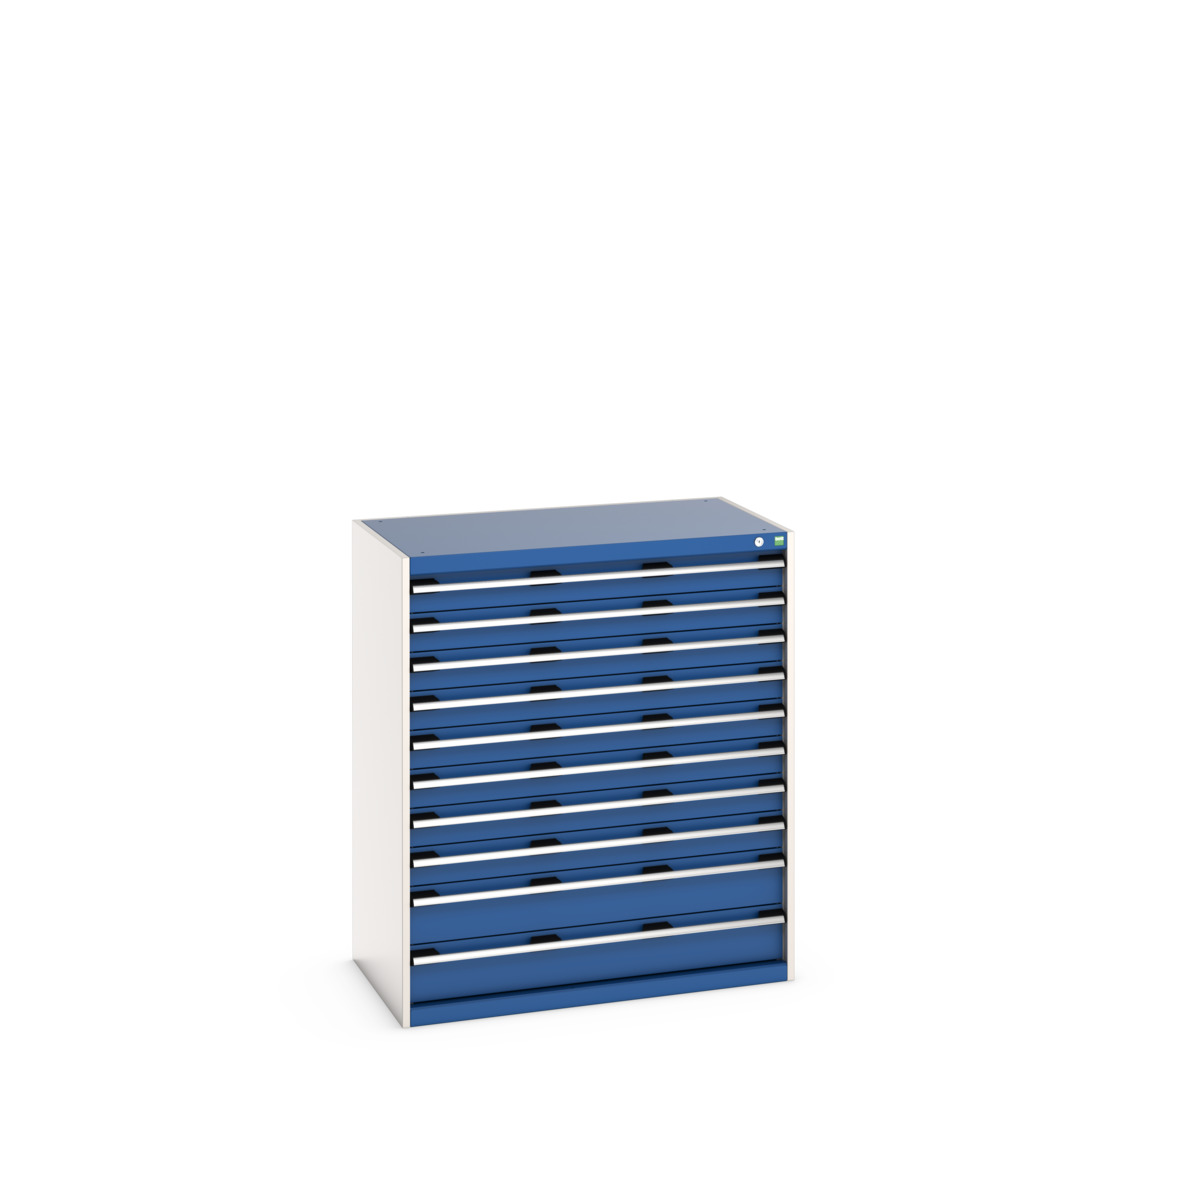 40021042.11V - cubio drawer cabinet